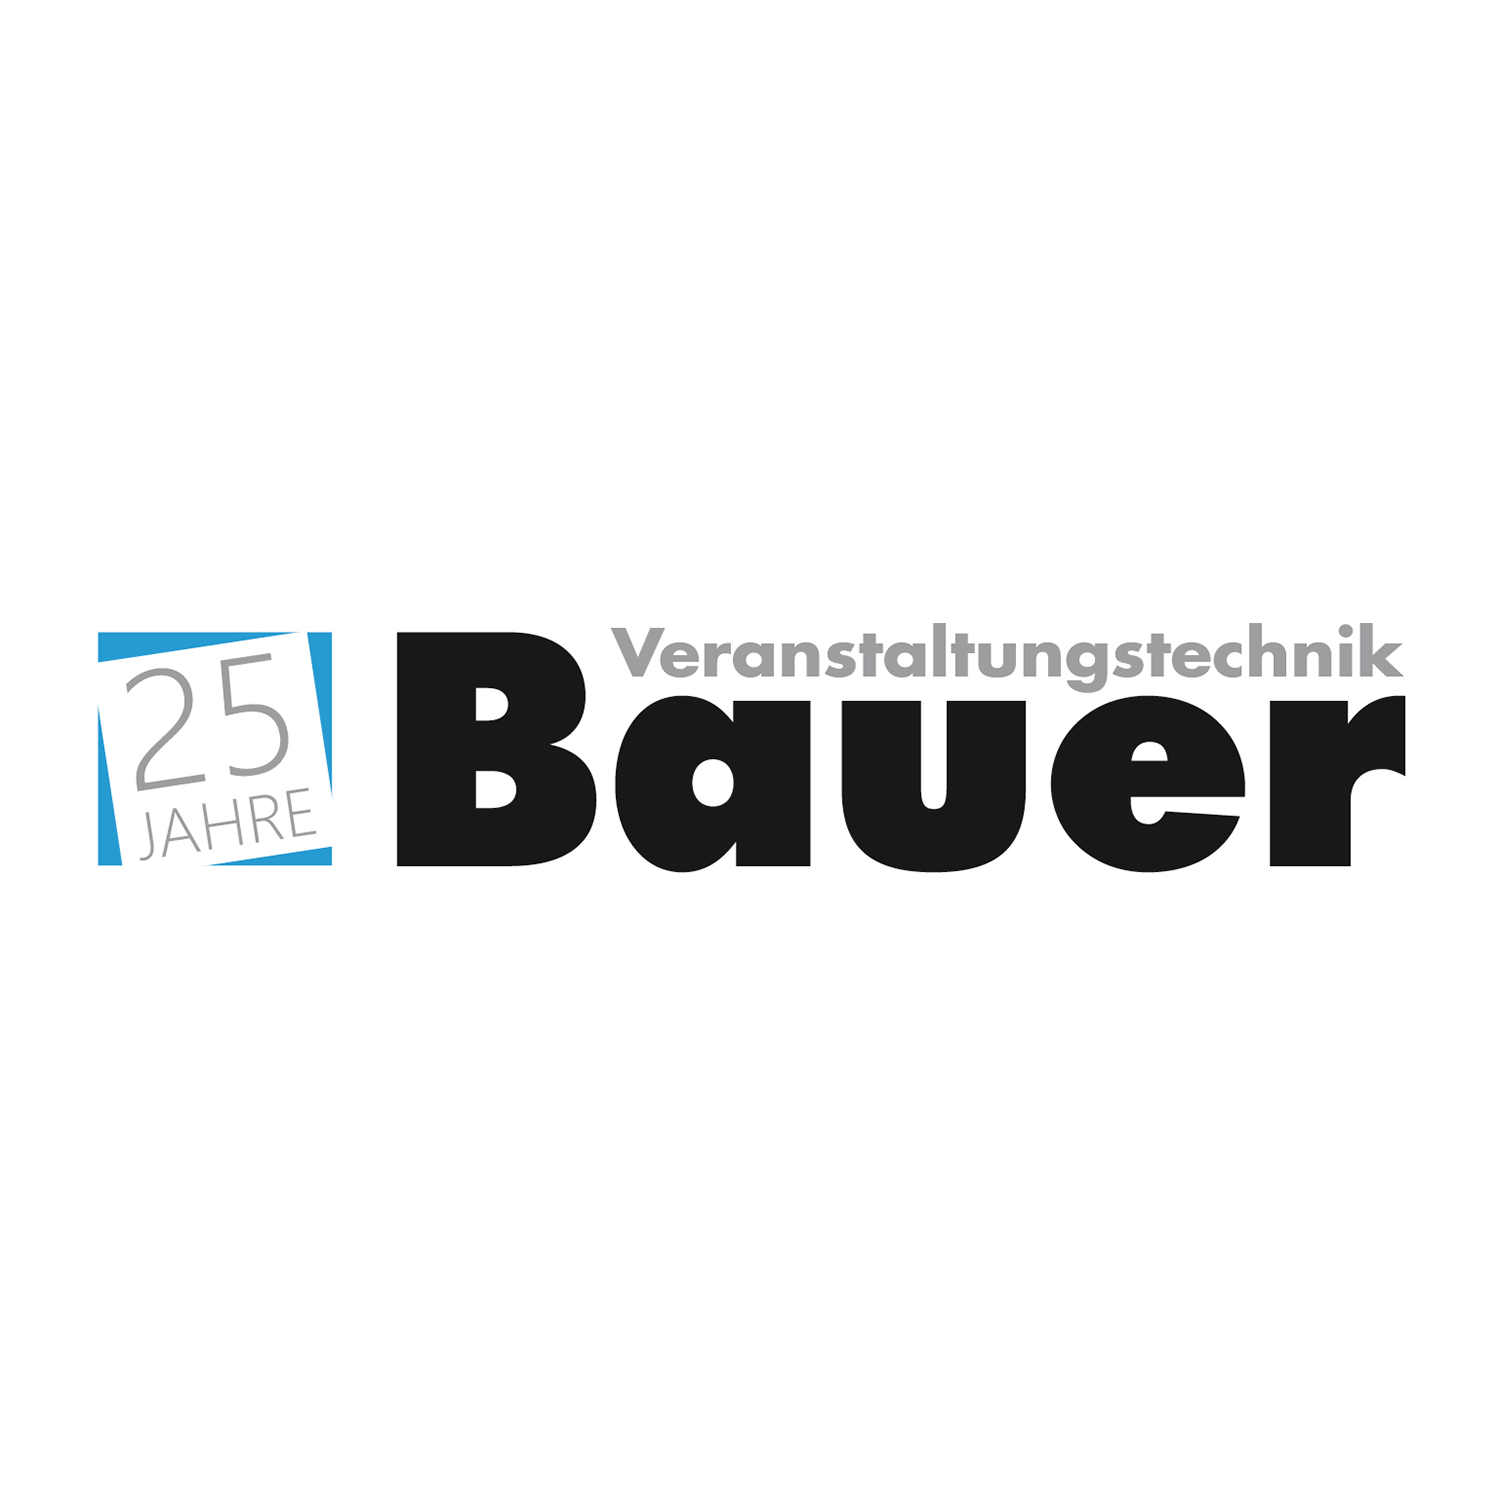 BAUER VERANSTALTUNGSTECHNIK Logo